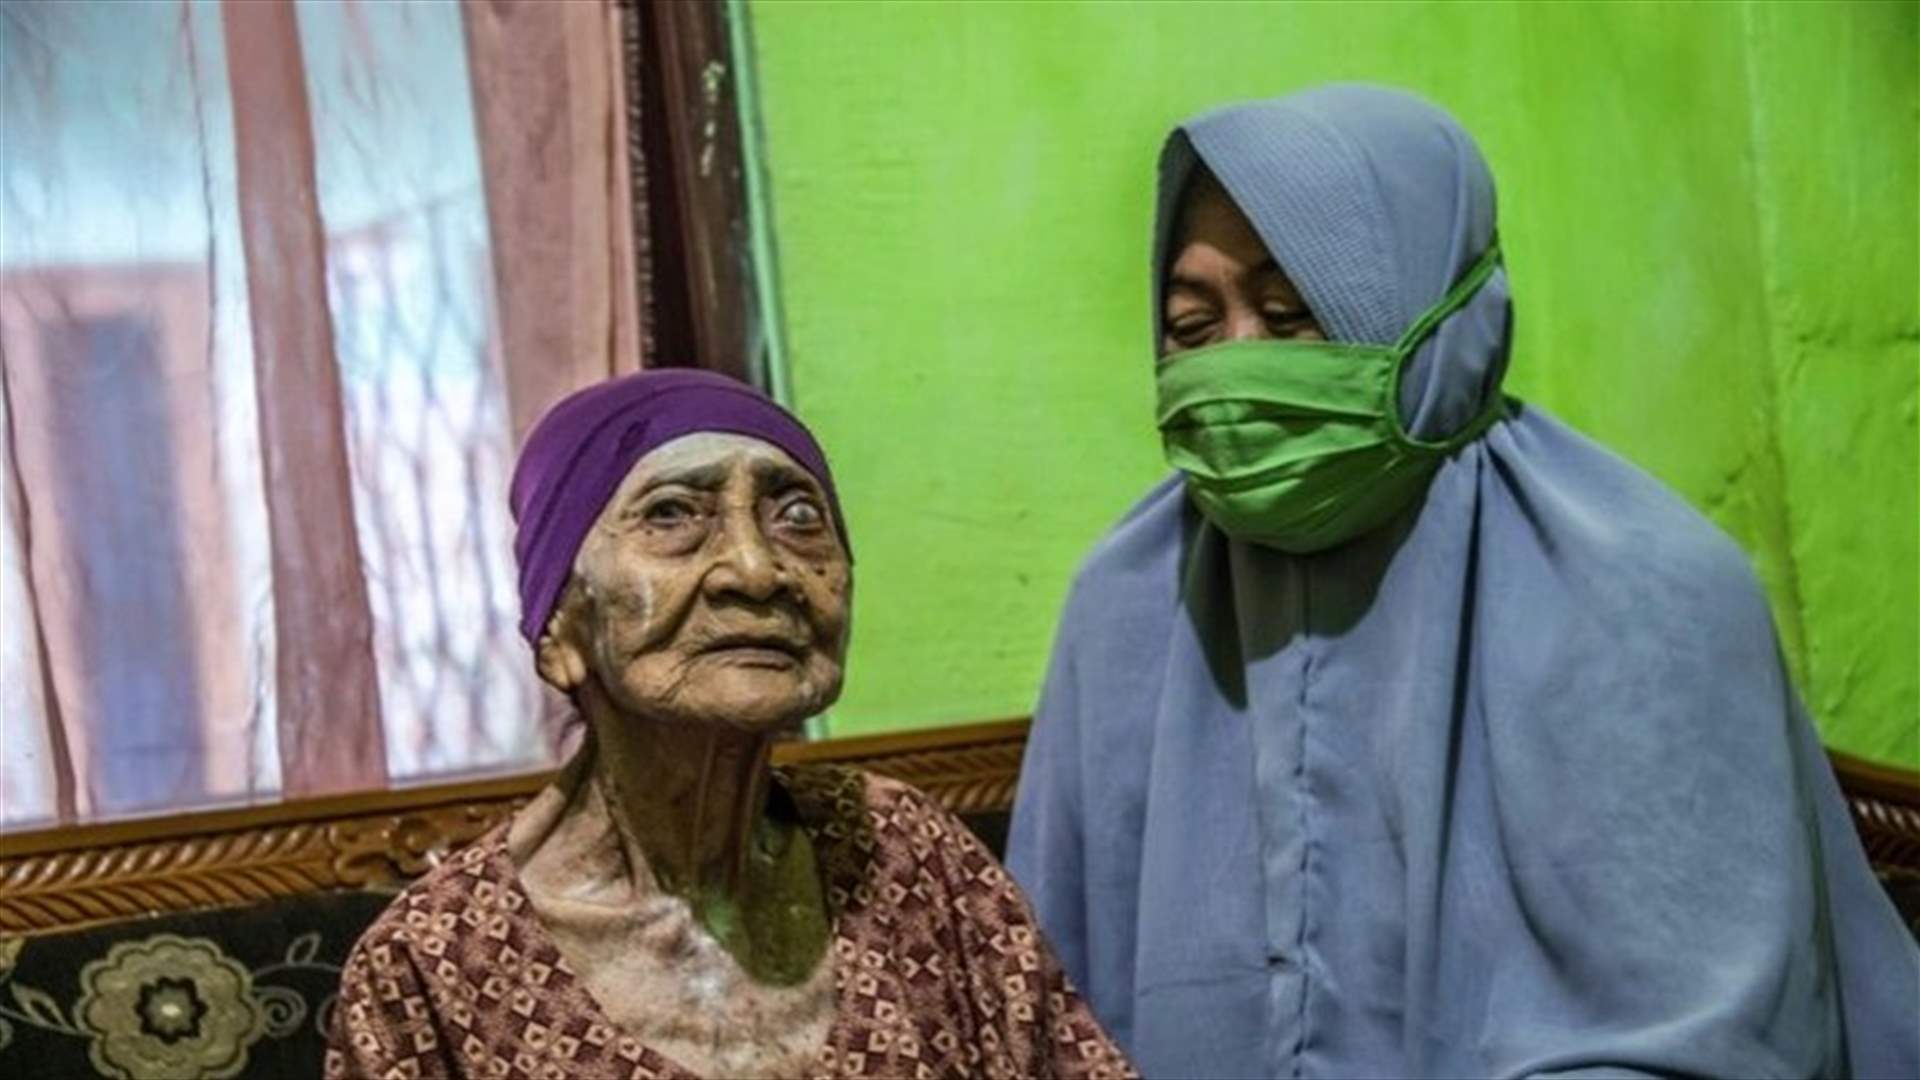 بعد شهرٍ في المستشفى... شفاء إندونيسية في سن المئة من فيروس كورونا